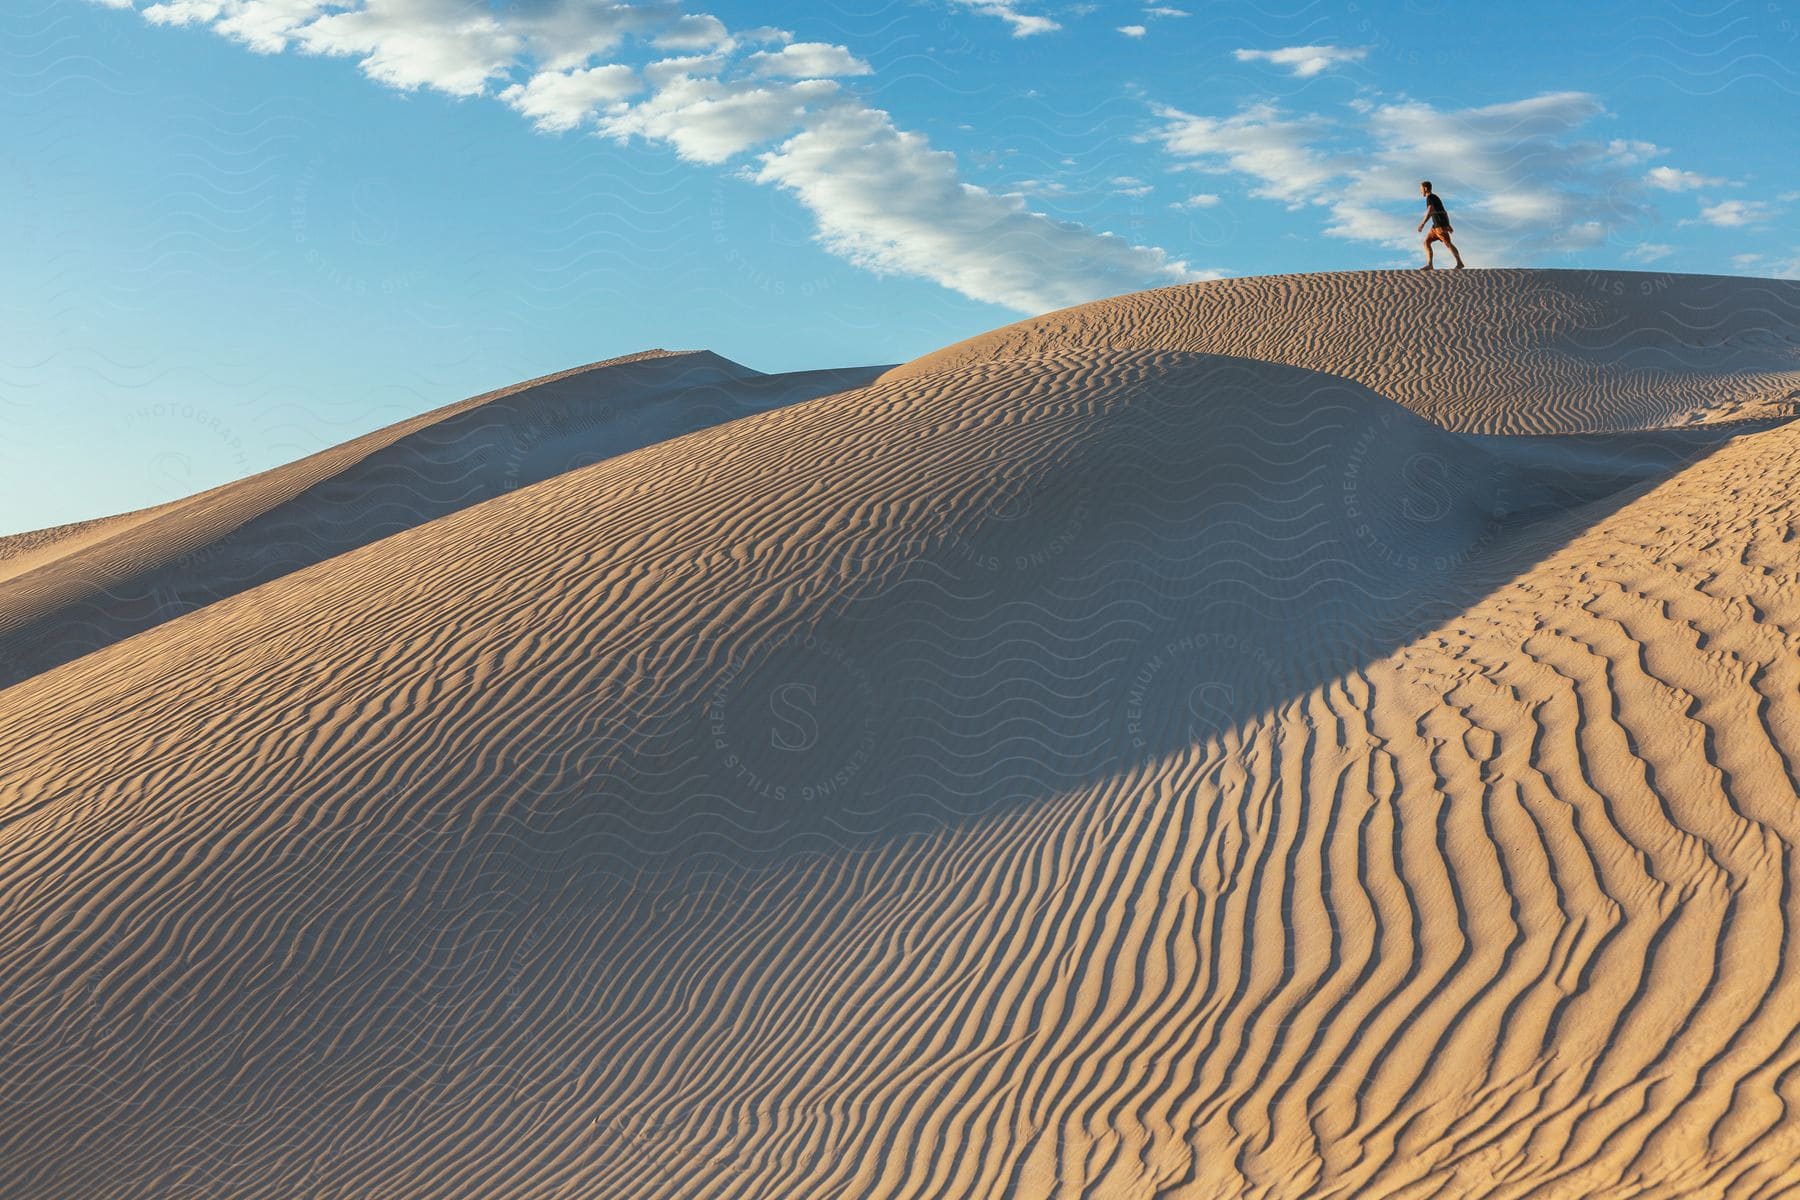 A person walks across sand dunes in a desert